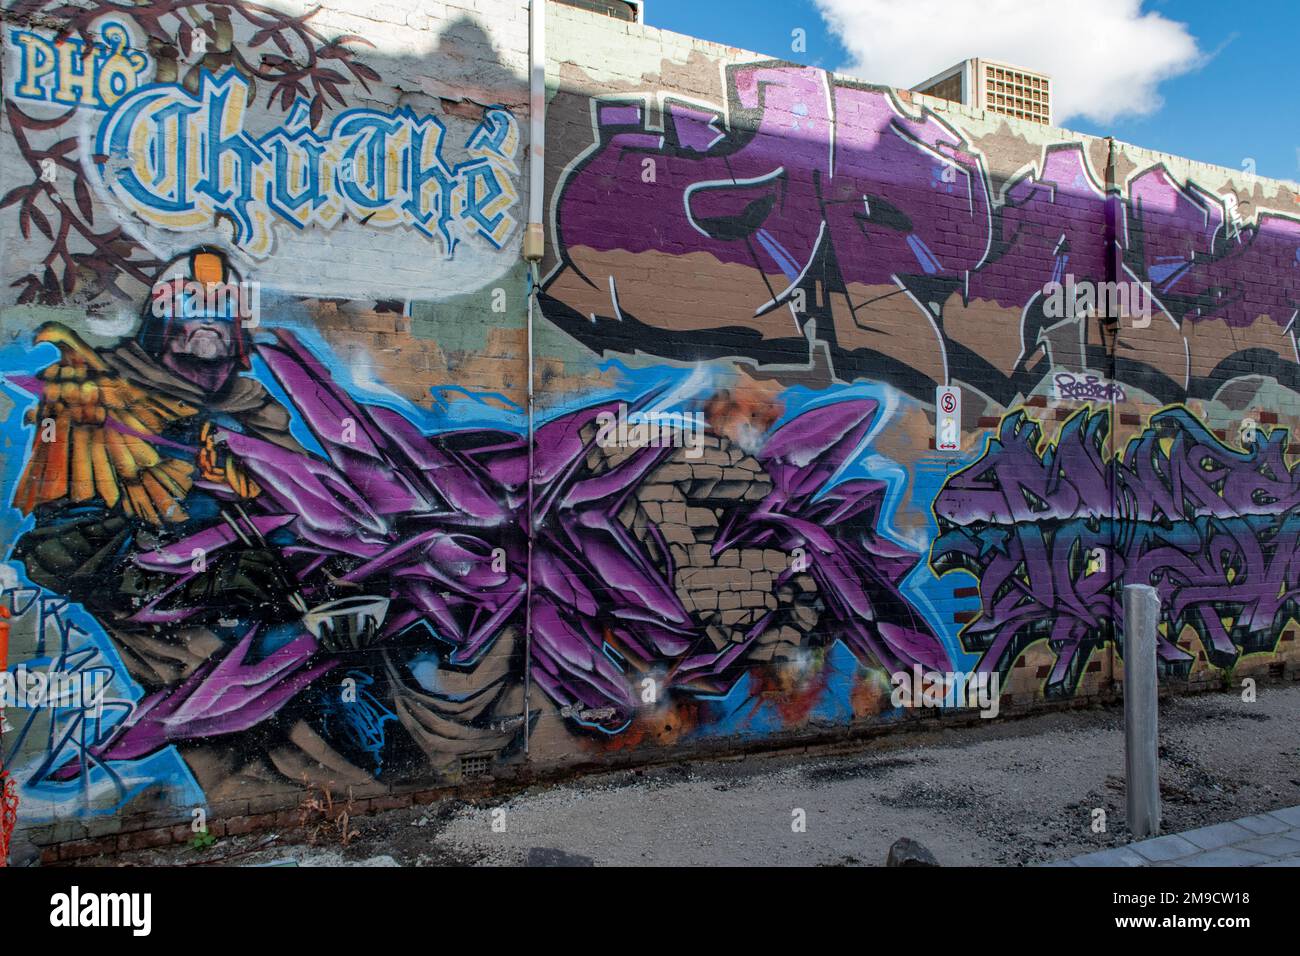 Pho Chu The Street Art, Footscray, Victoria, Australia Stock Photo